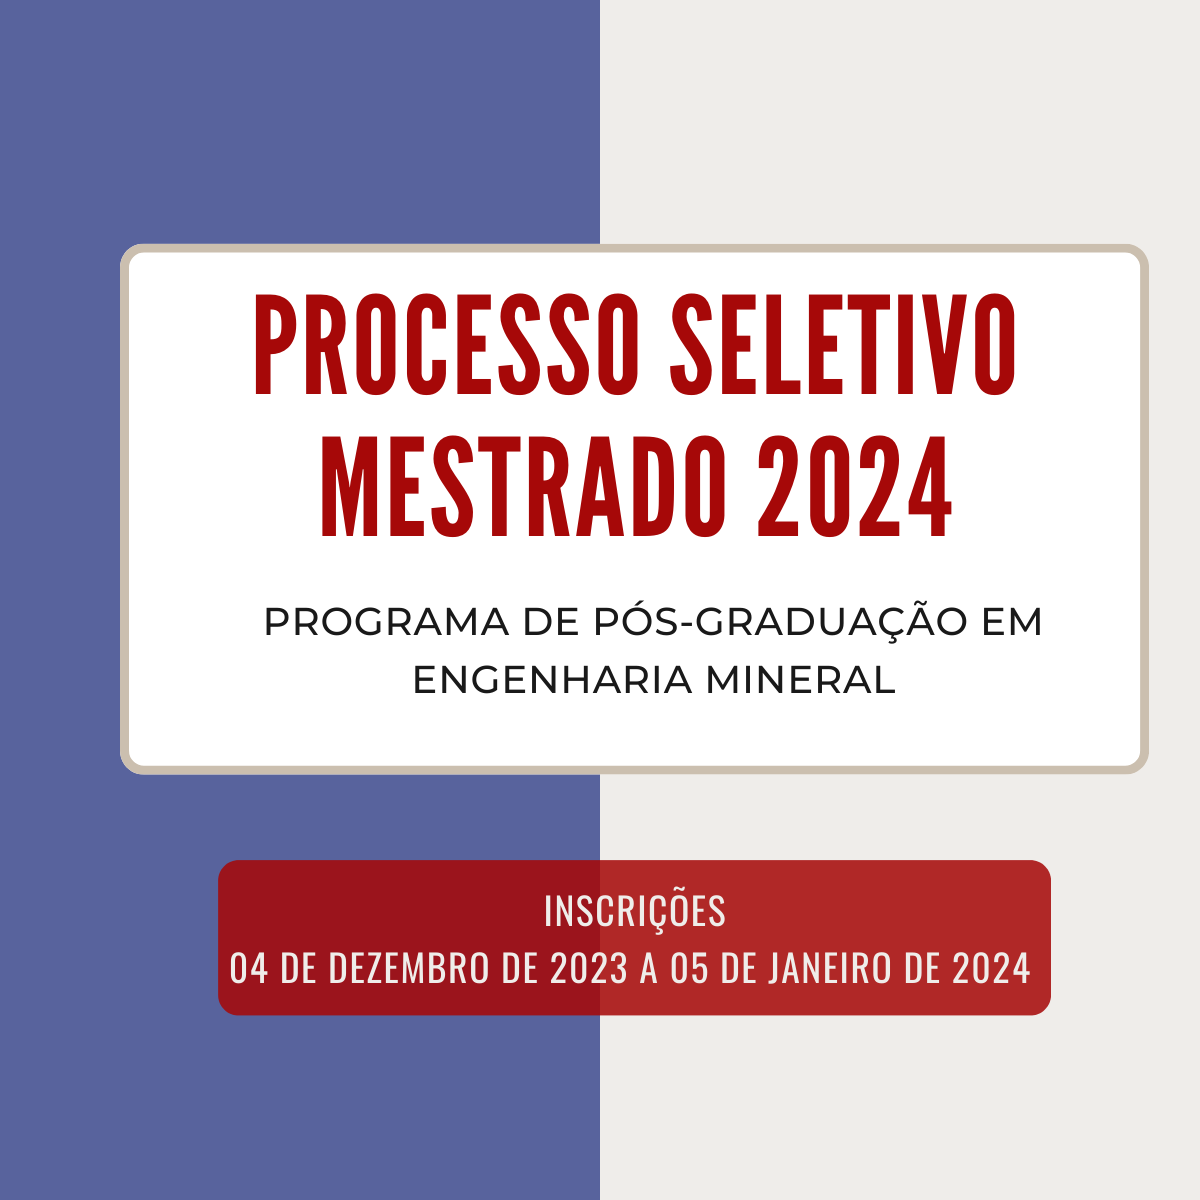 Processo Seletivo 2024/1 – Mestrado e Doutorado - Programa de Pós-Graduação  em Ciência Animal